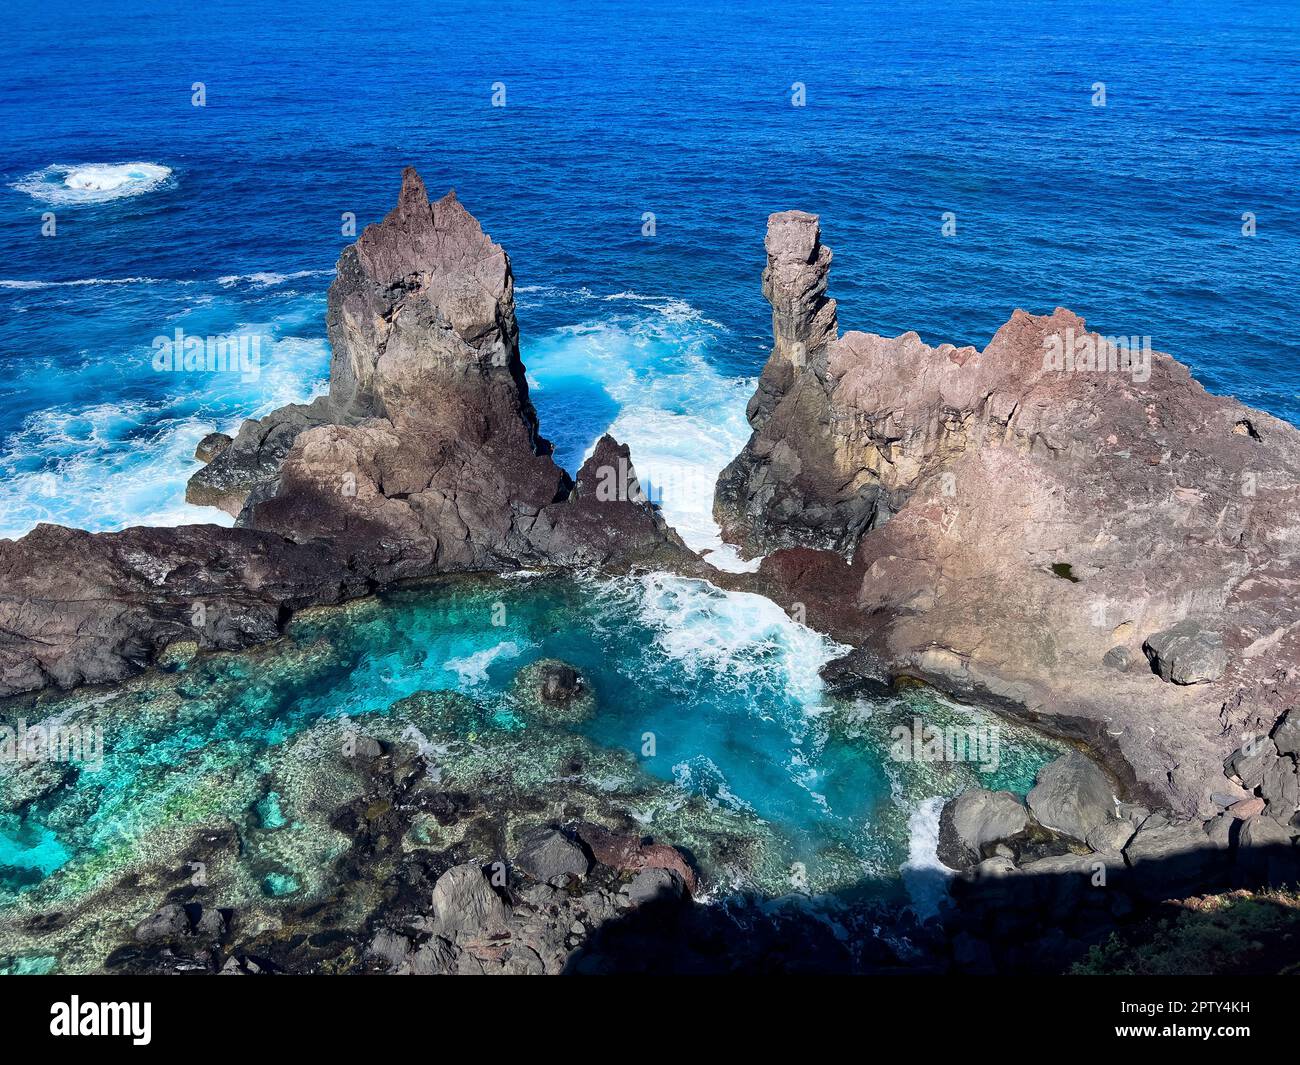 La splendida St. La piscina di Pauls sull'isola di Pitcairn, sede del mutinismo sulla Bounty Foto Stock